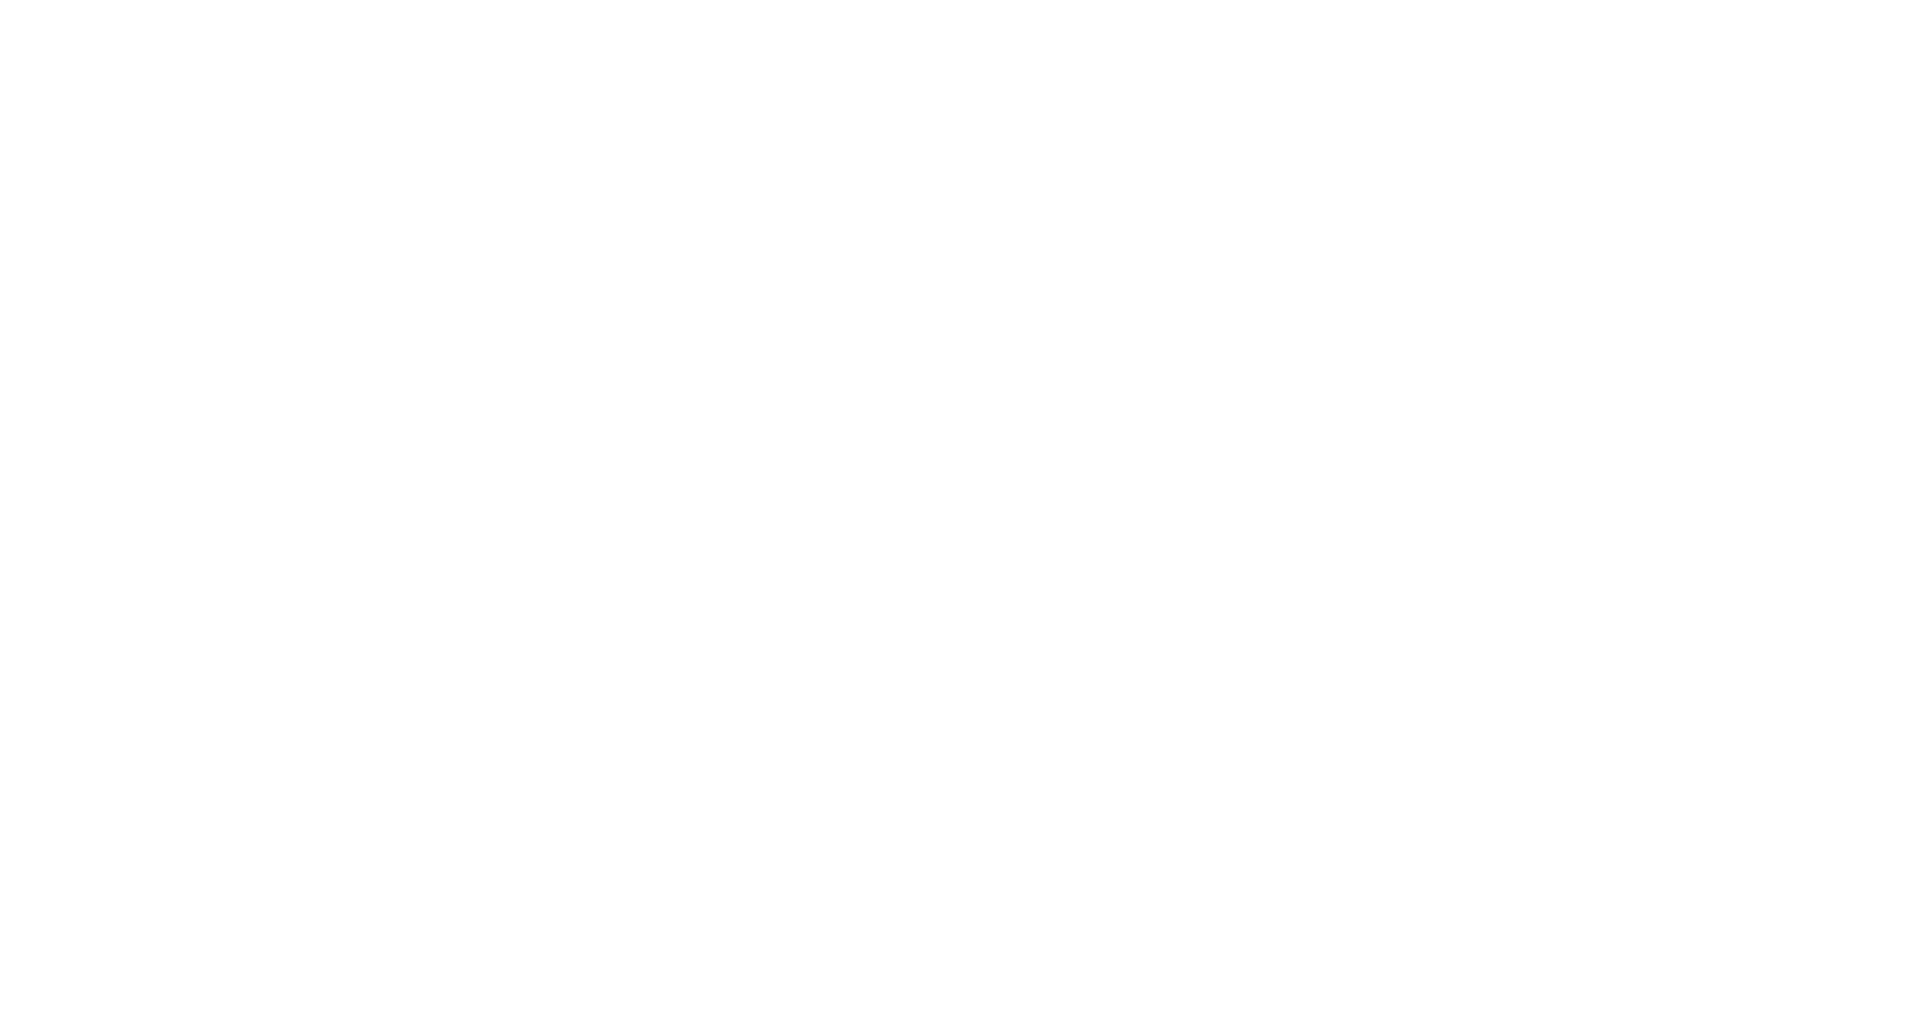 Full Sky of Stars